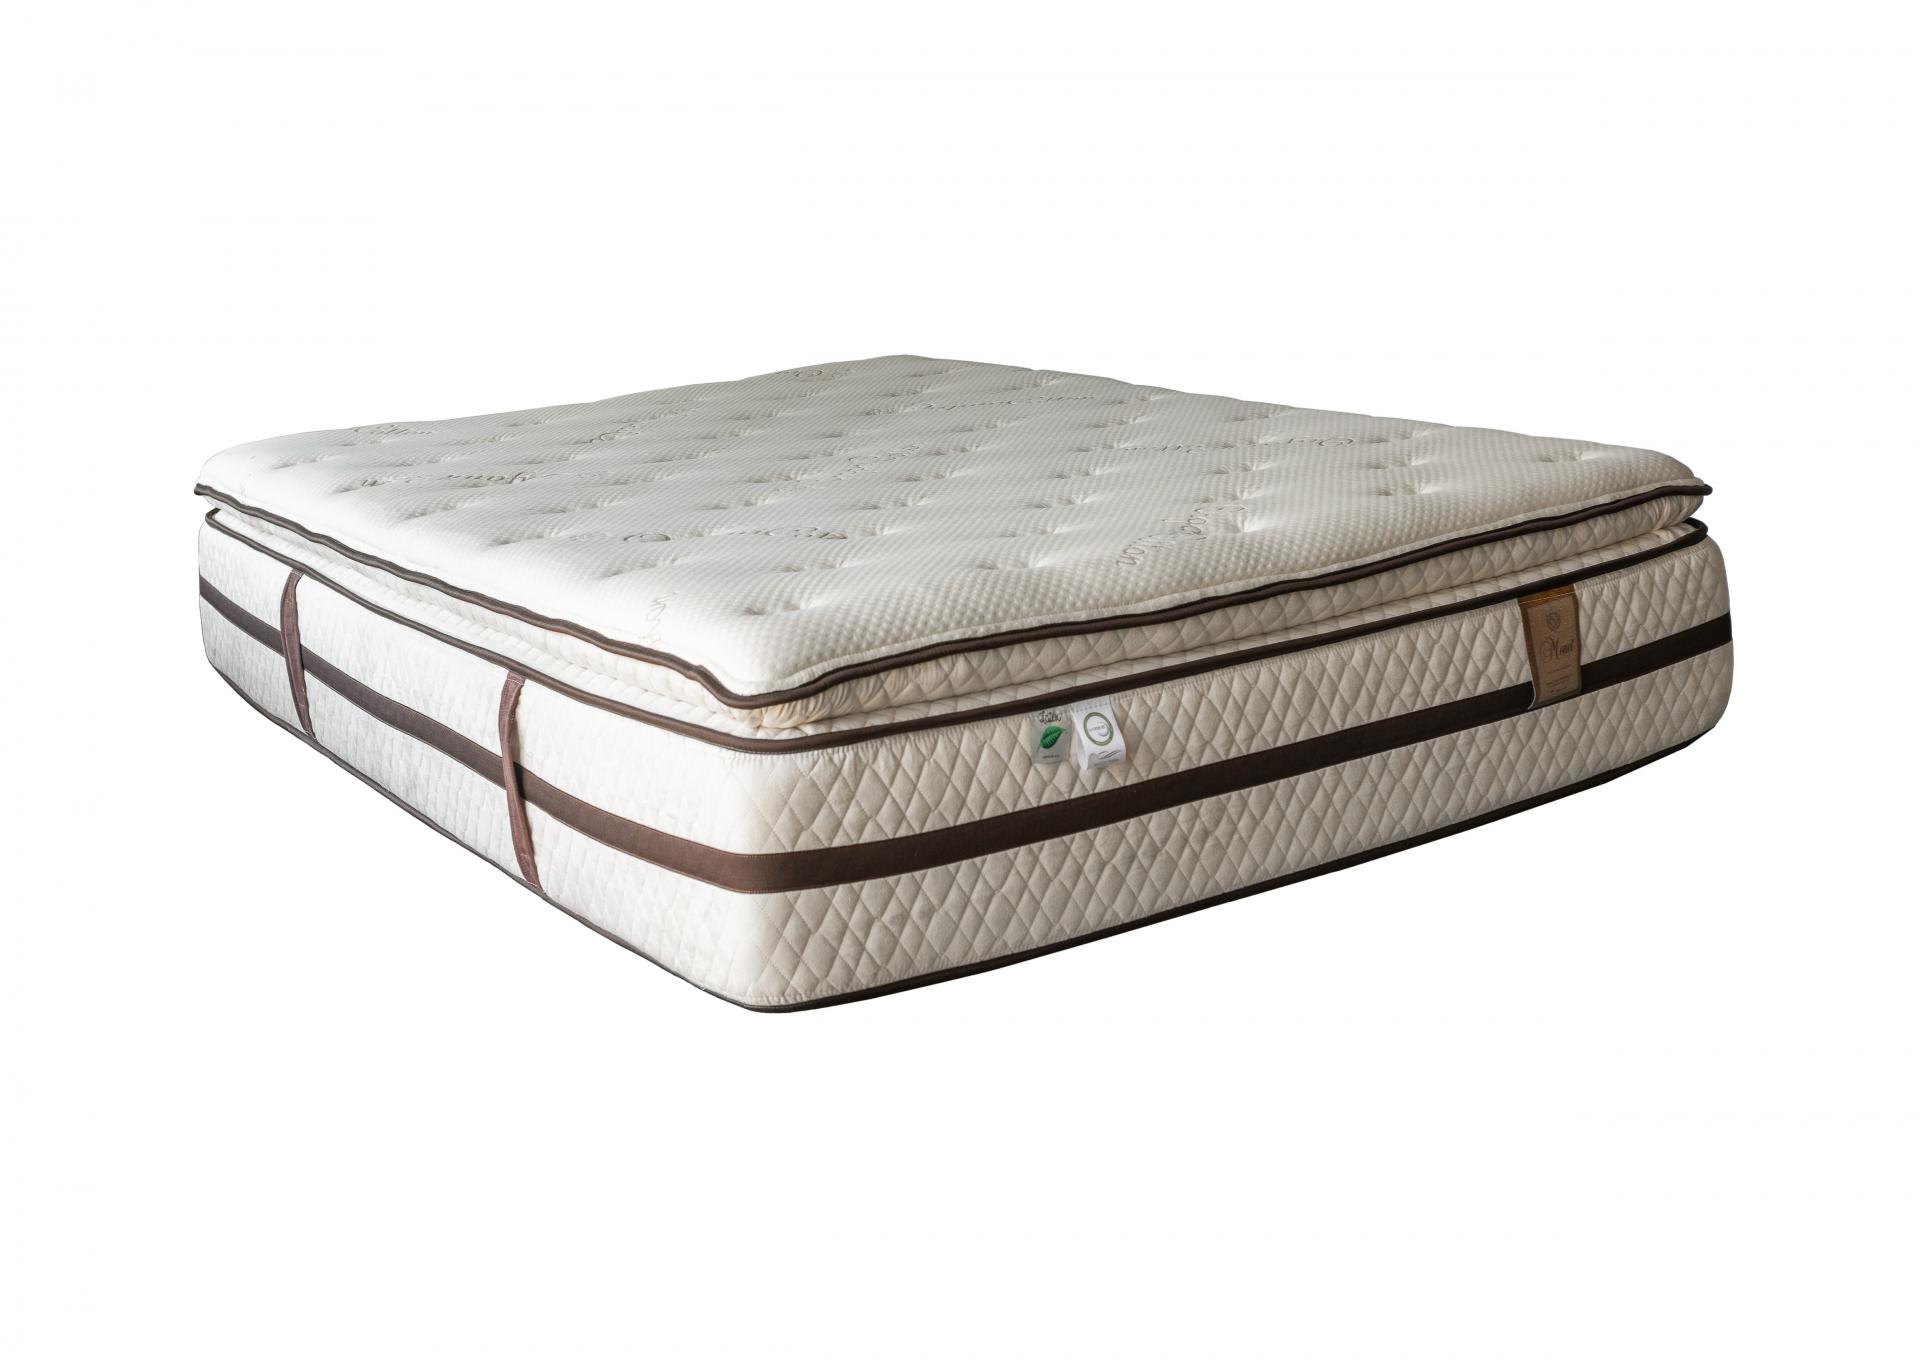 Monet Pillow Top Twin,Bed Post Mattresses 